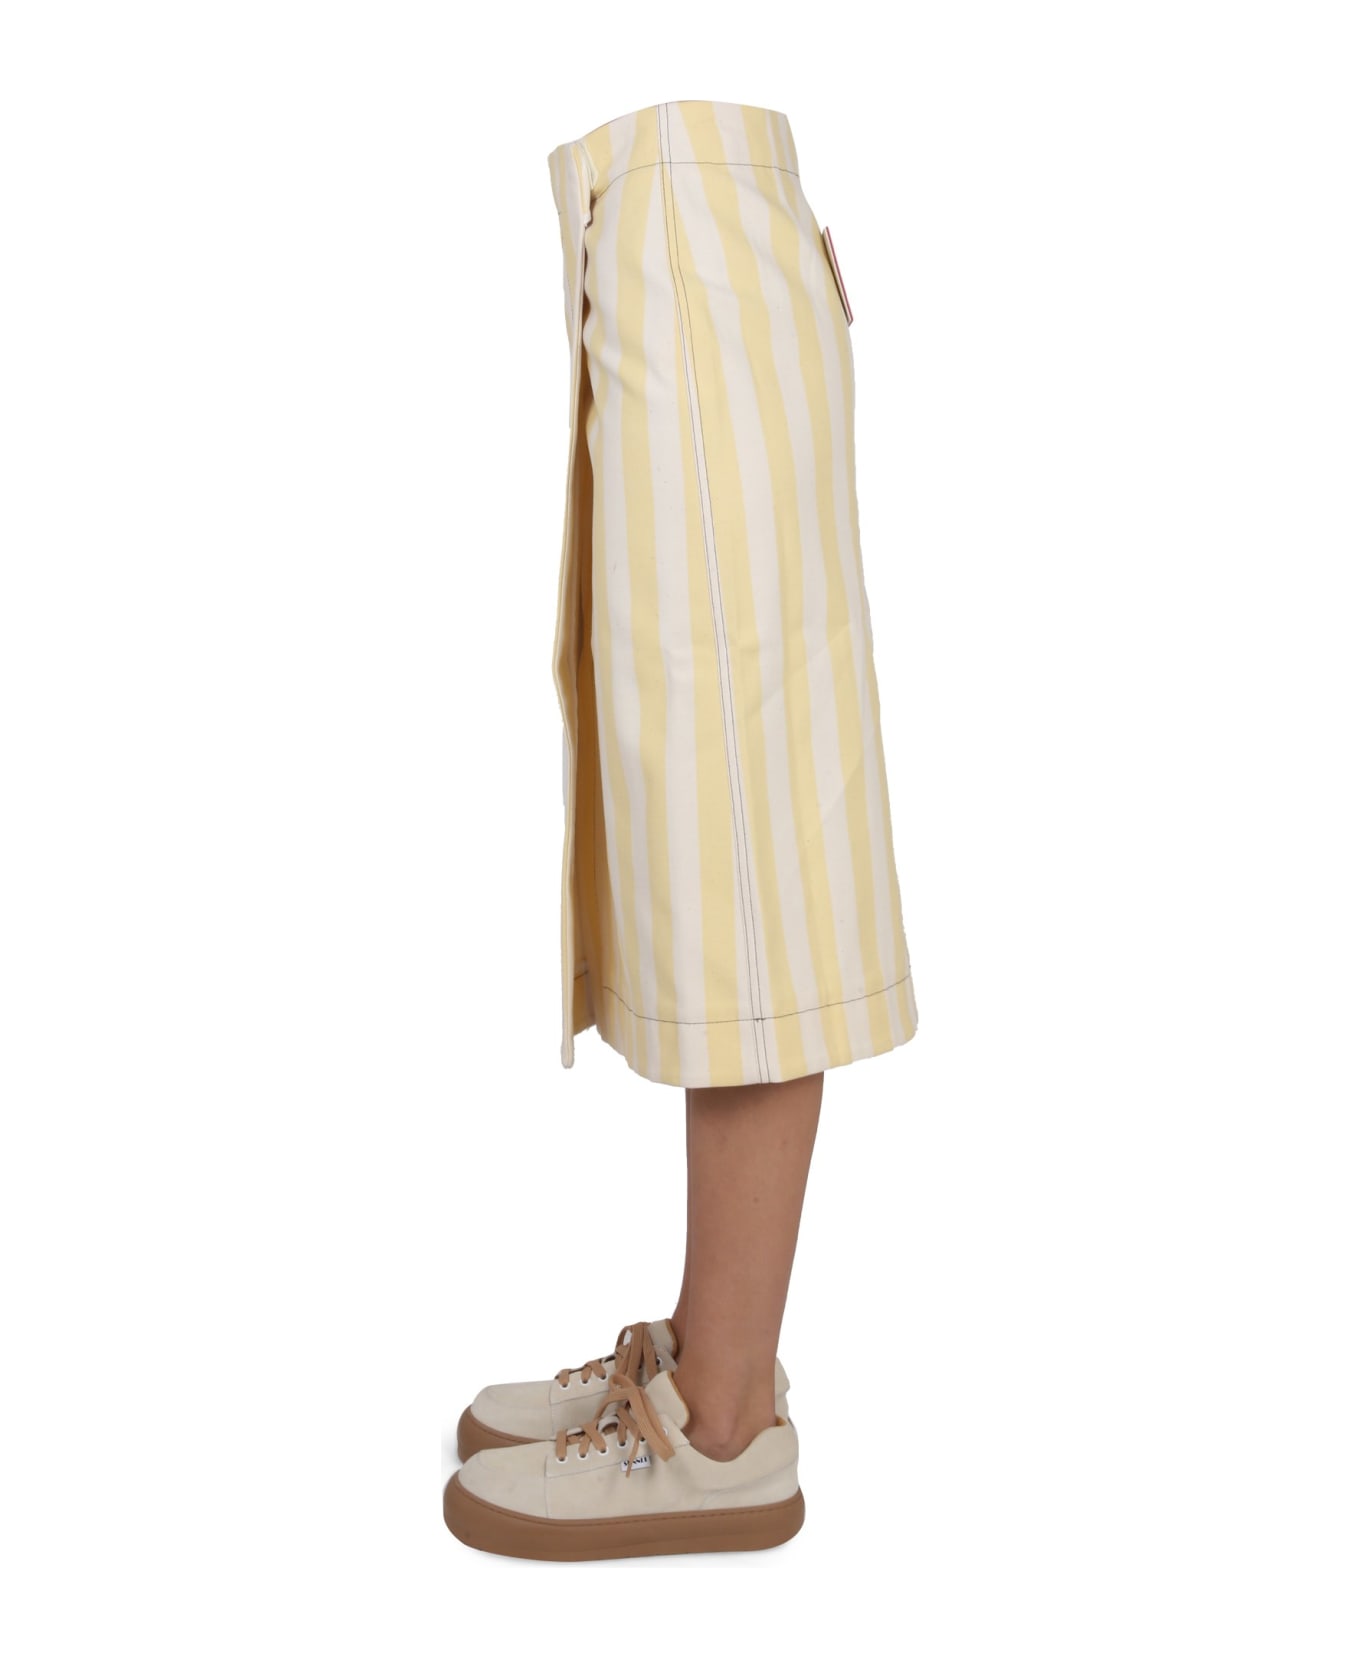 Sunnei Striped Pattern Skirt - BEIGE